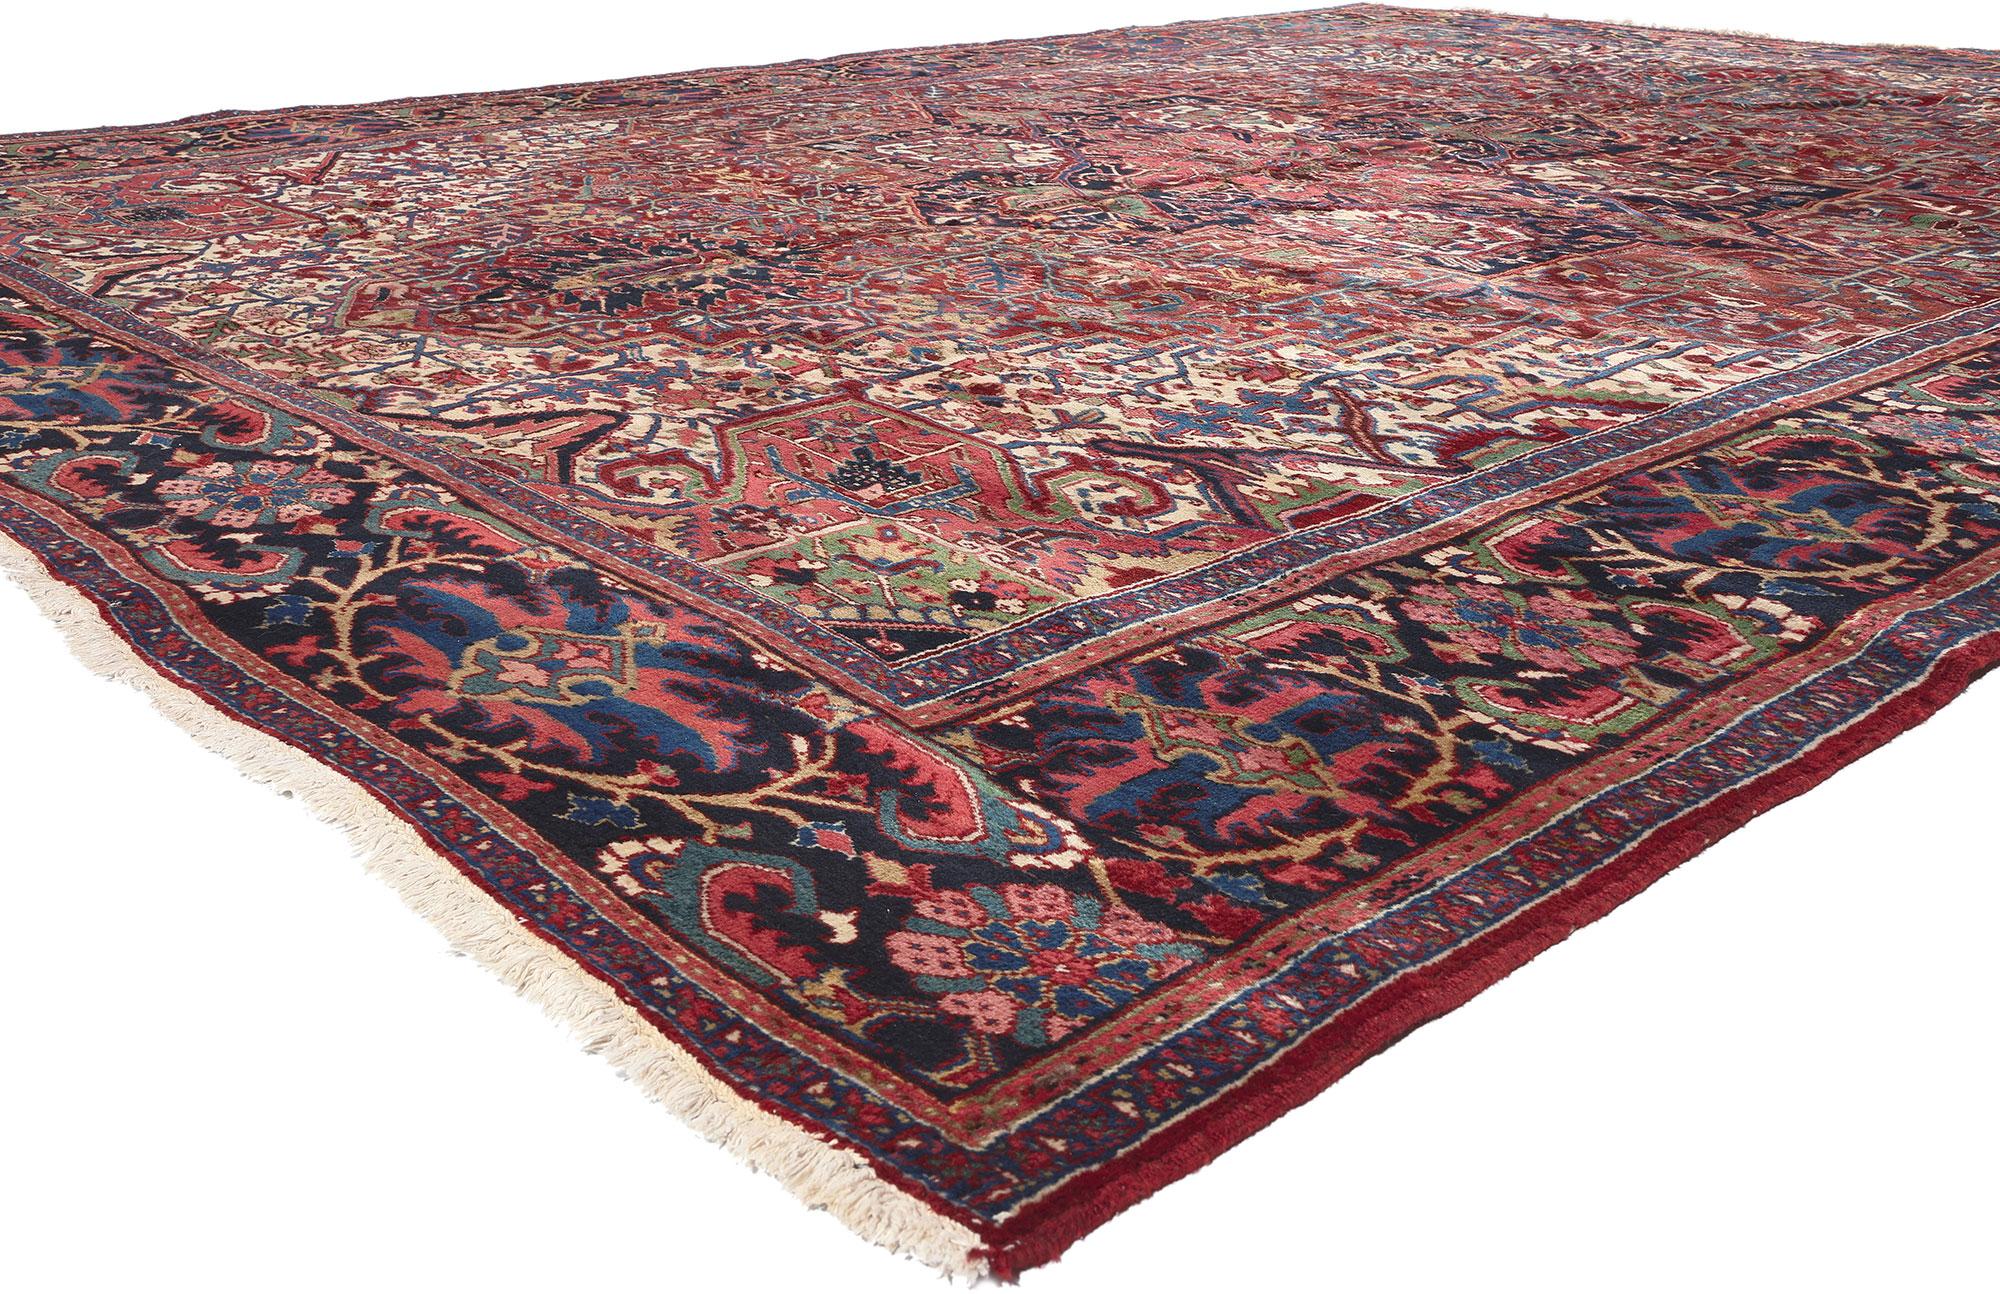 78341 Tapis persan ancien Heriz, 11'04 x 15'00. Les tapis Heriz, fabriqués dans le nord-ouest de l'Iran, sont réputés pour leurs caractéristiques particulières. Fabriqués dans le village de Heris, niché sur les pentes du mont Sabalan, ces tapis